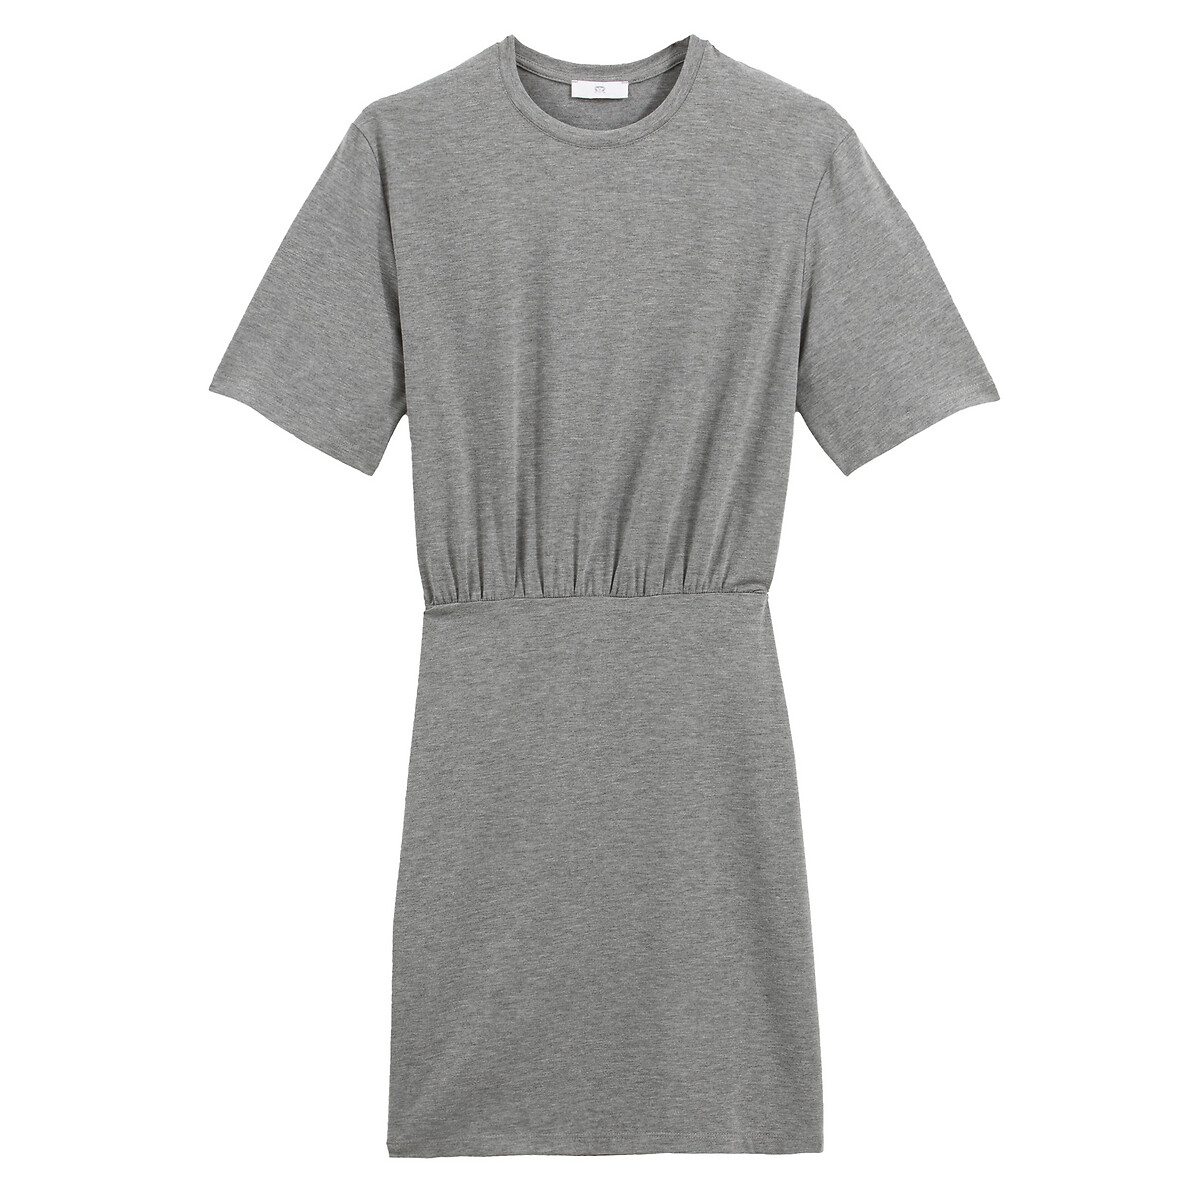 Платье-футболка La Redoute Короткое однотонное с короткими рукавами 40 (FR) - 46 (RUS) серый, размер 40 (FR) - 46 (RUS) Короткое однотонное с короткими рукавами 40 (FR) - 46 (RUS) серый - фото 5